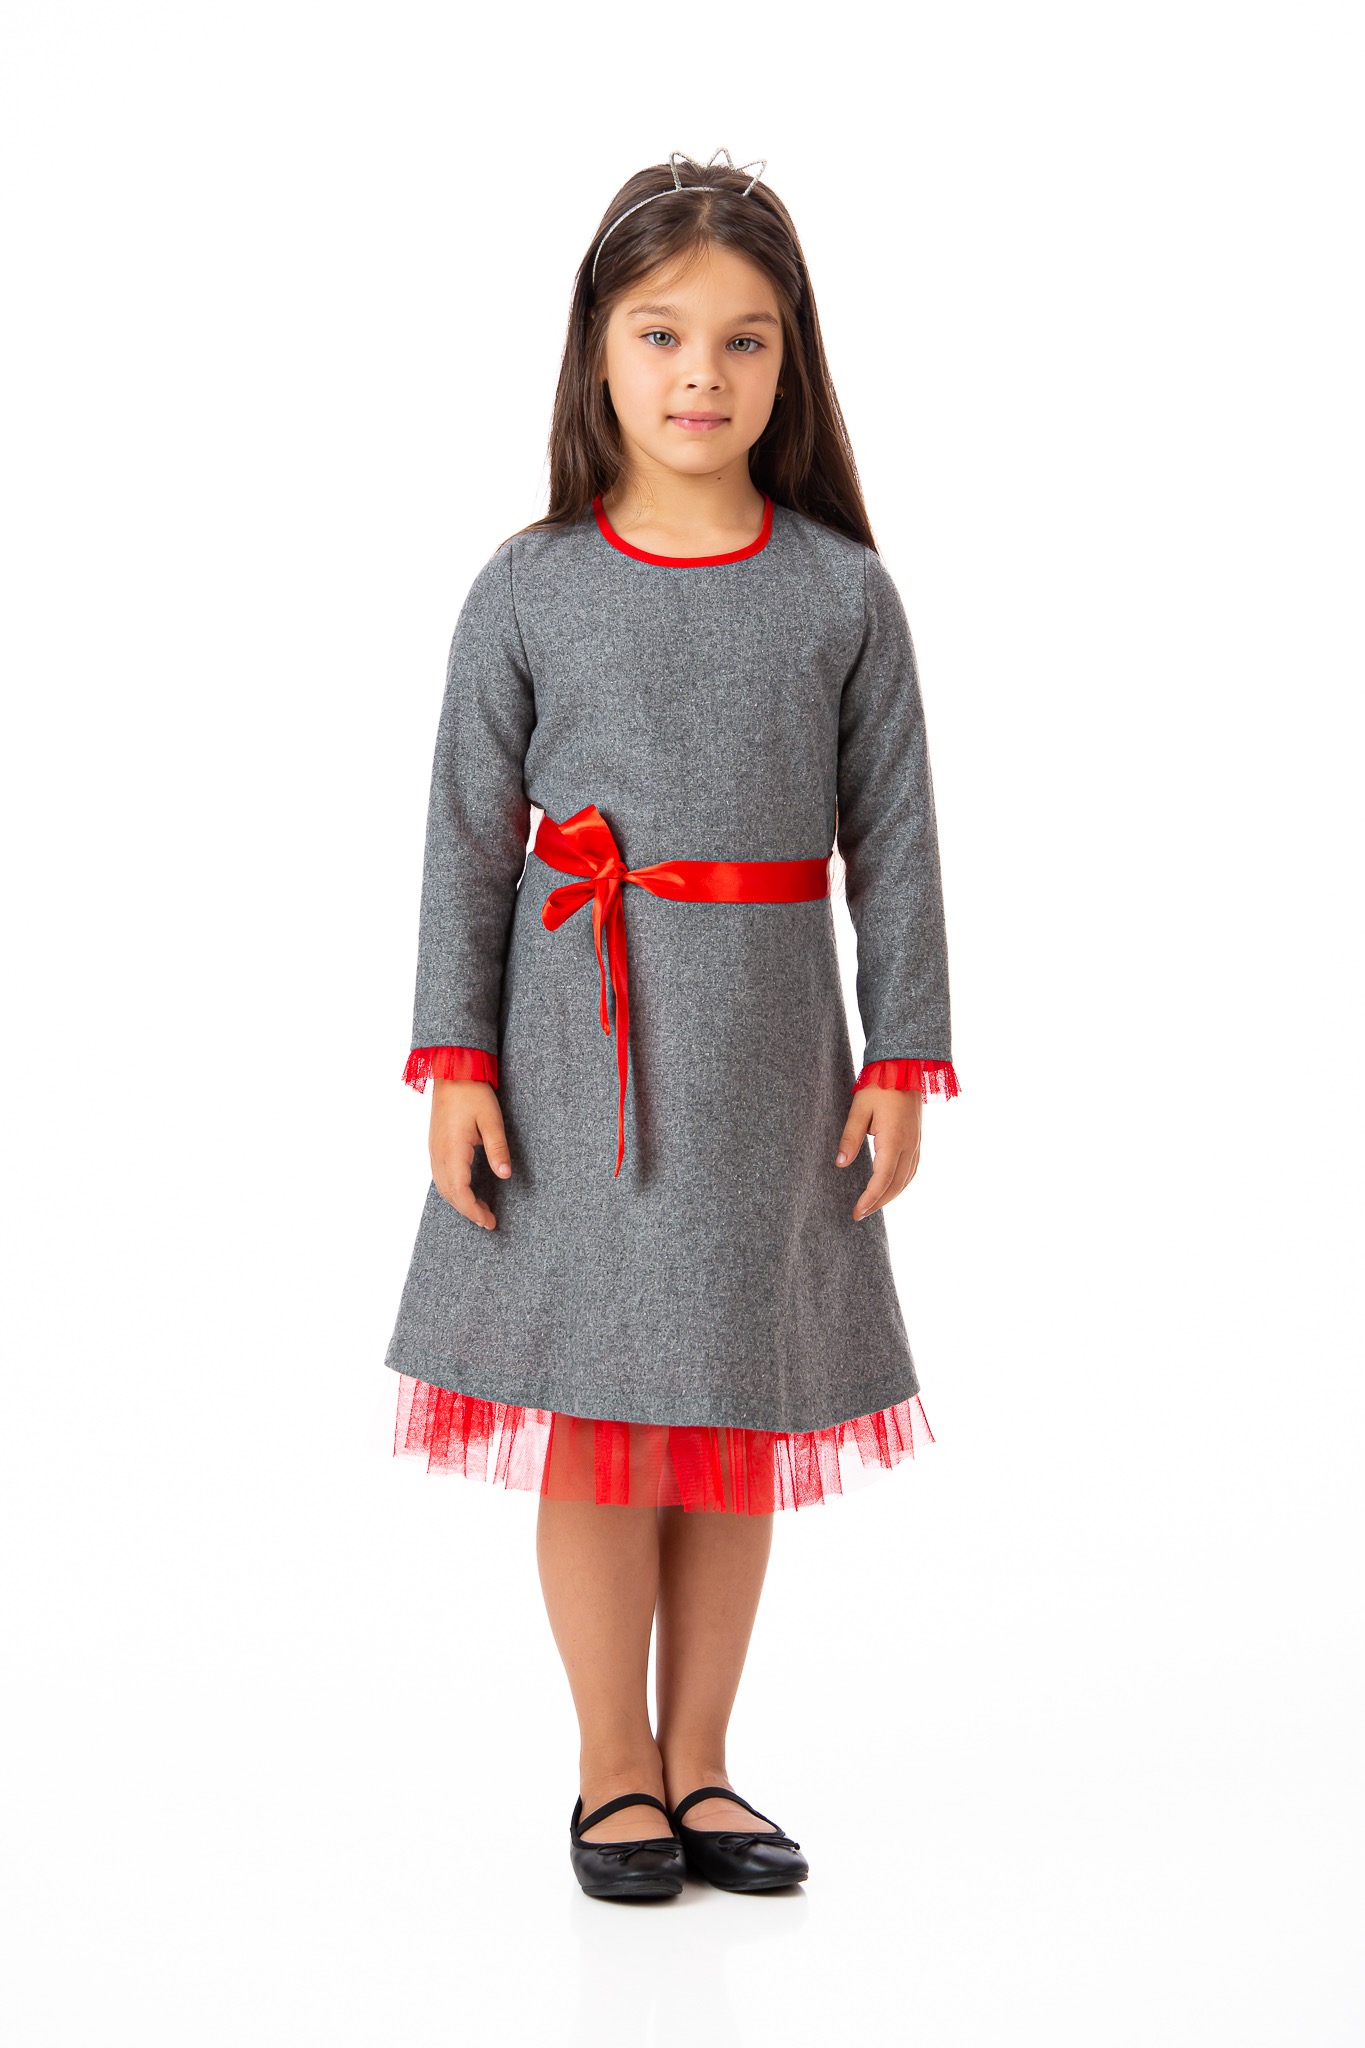 Rochie stofă toamnă/iarnă cu tul roșu la mâneci și